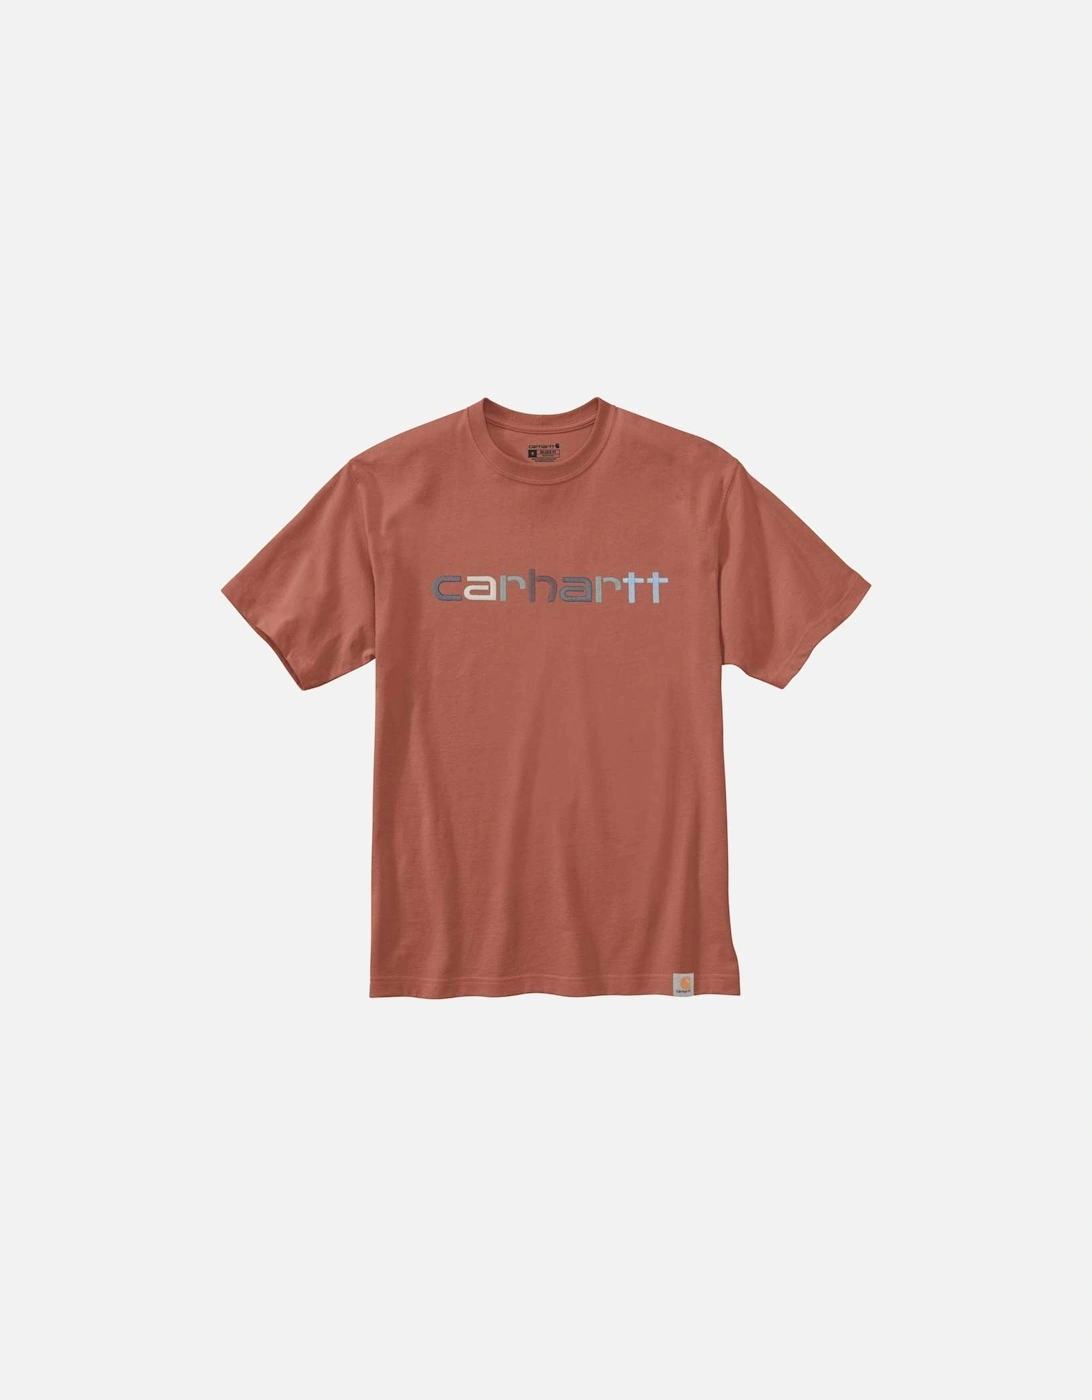 Carhartt Mens Heavyweight Short Sleeve Graphic T Shirt, 2 of 1